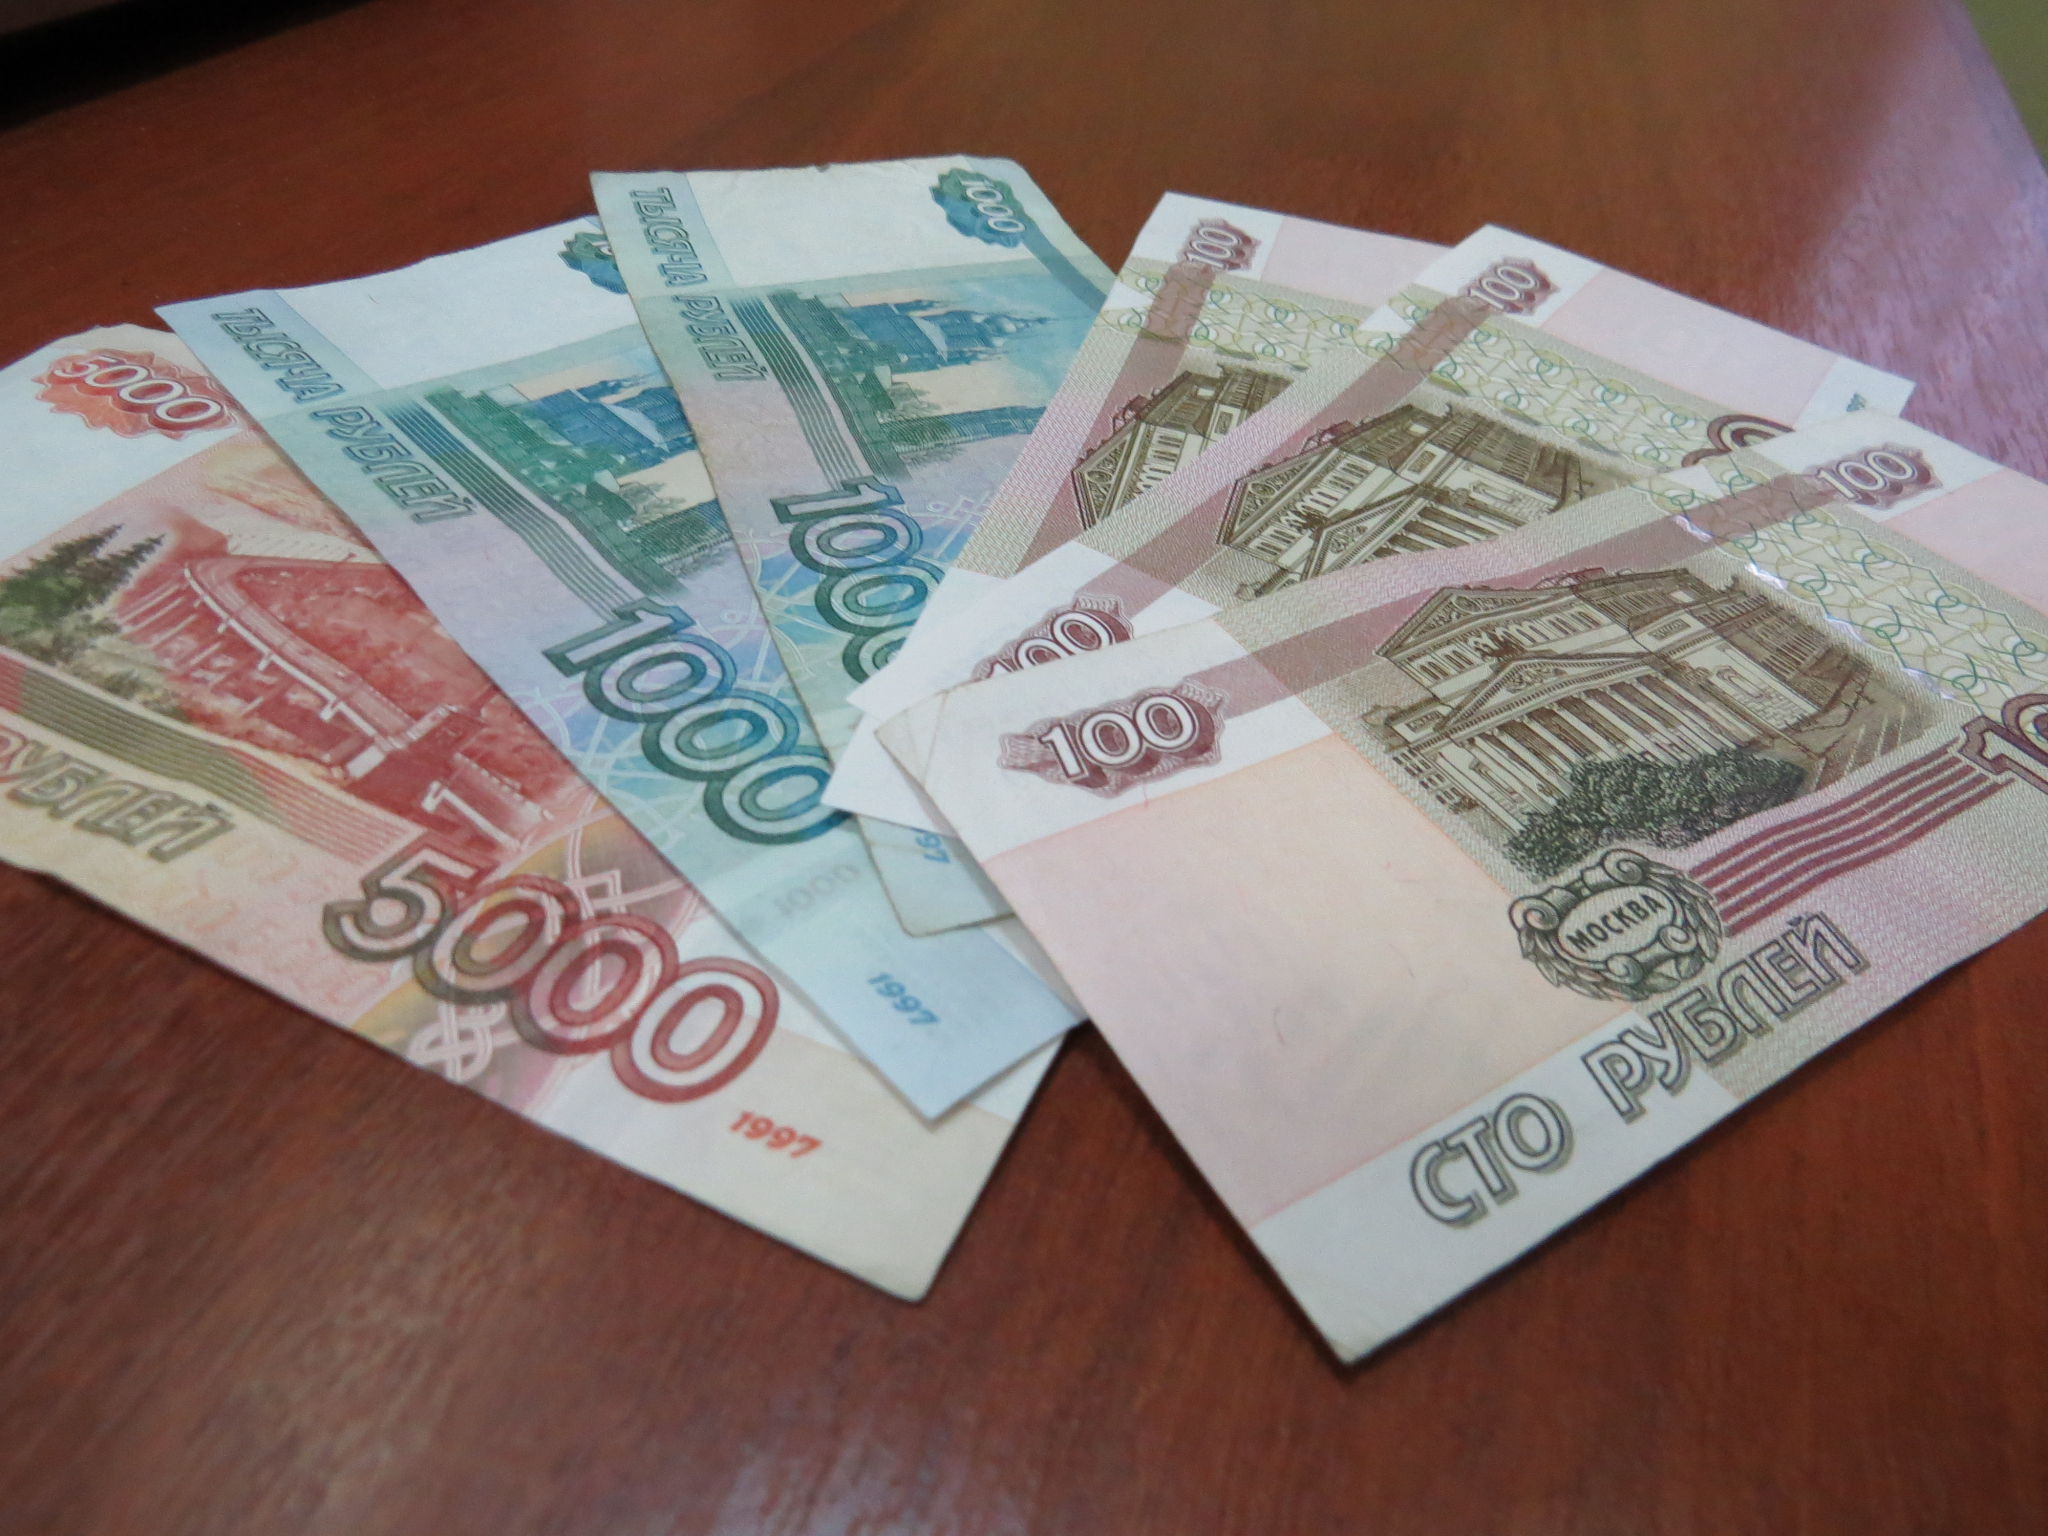 В Мордовии гражданин Азербайджана расплачивался в магазинах фальшивыми купюрами